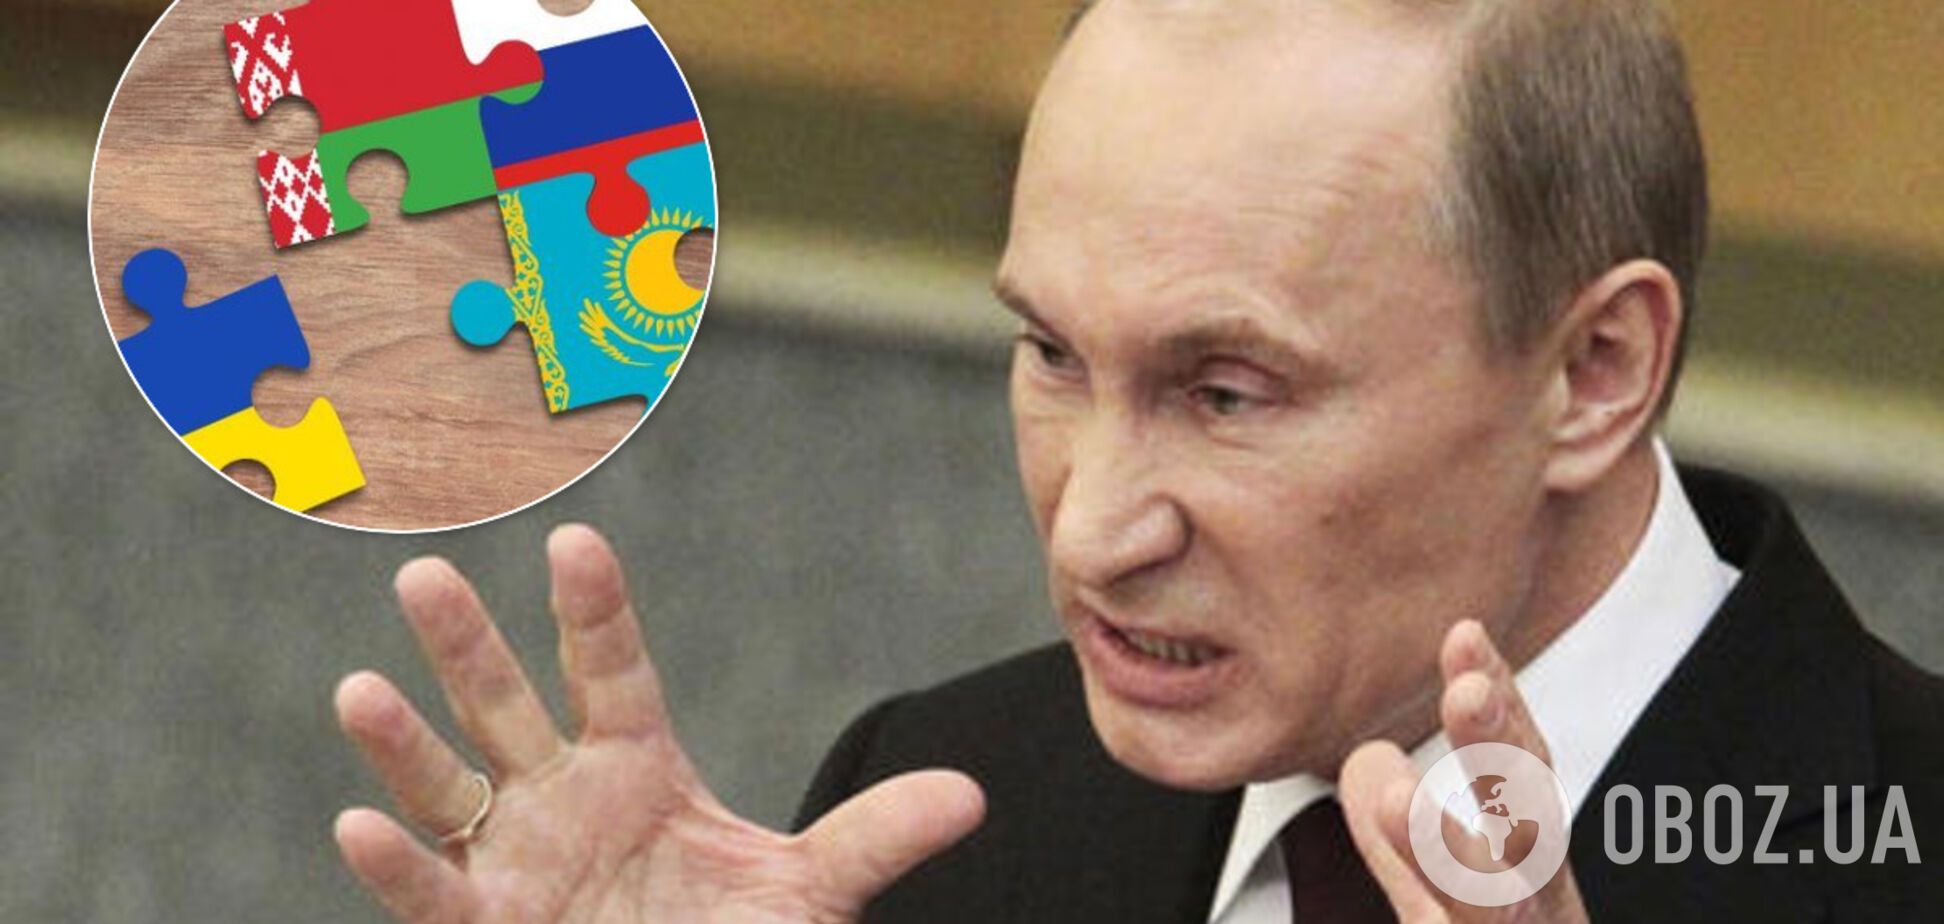 Данилов рассказал о плане Путина построить 'большую империю'